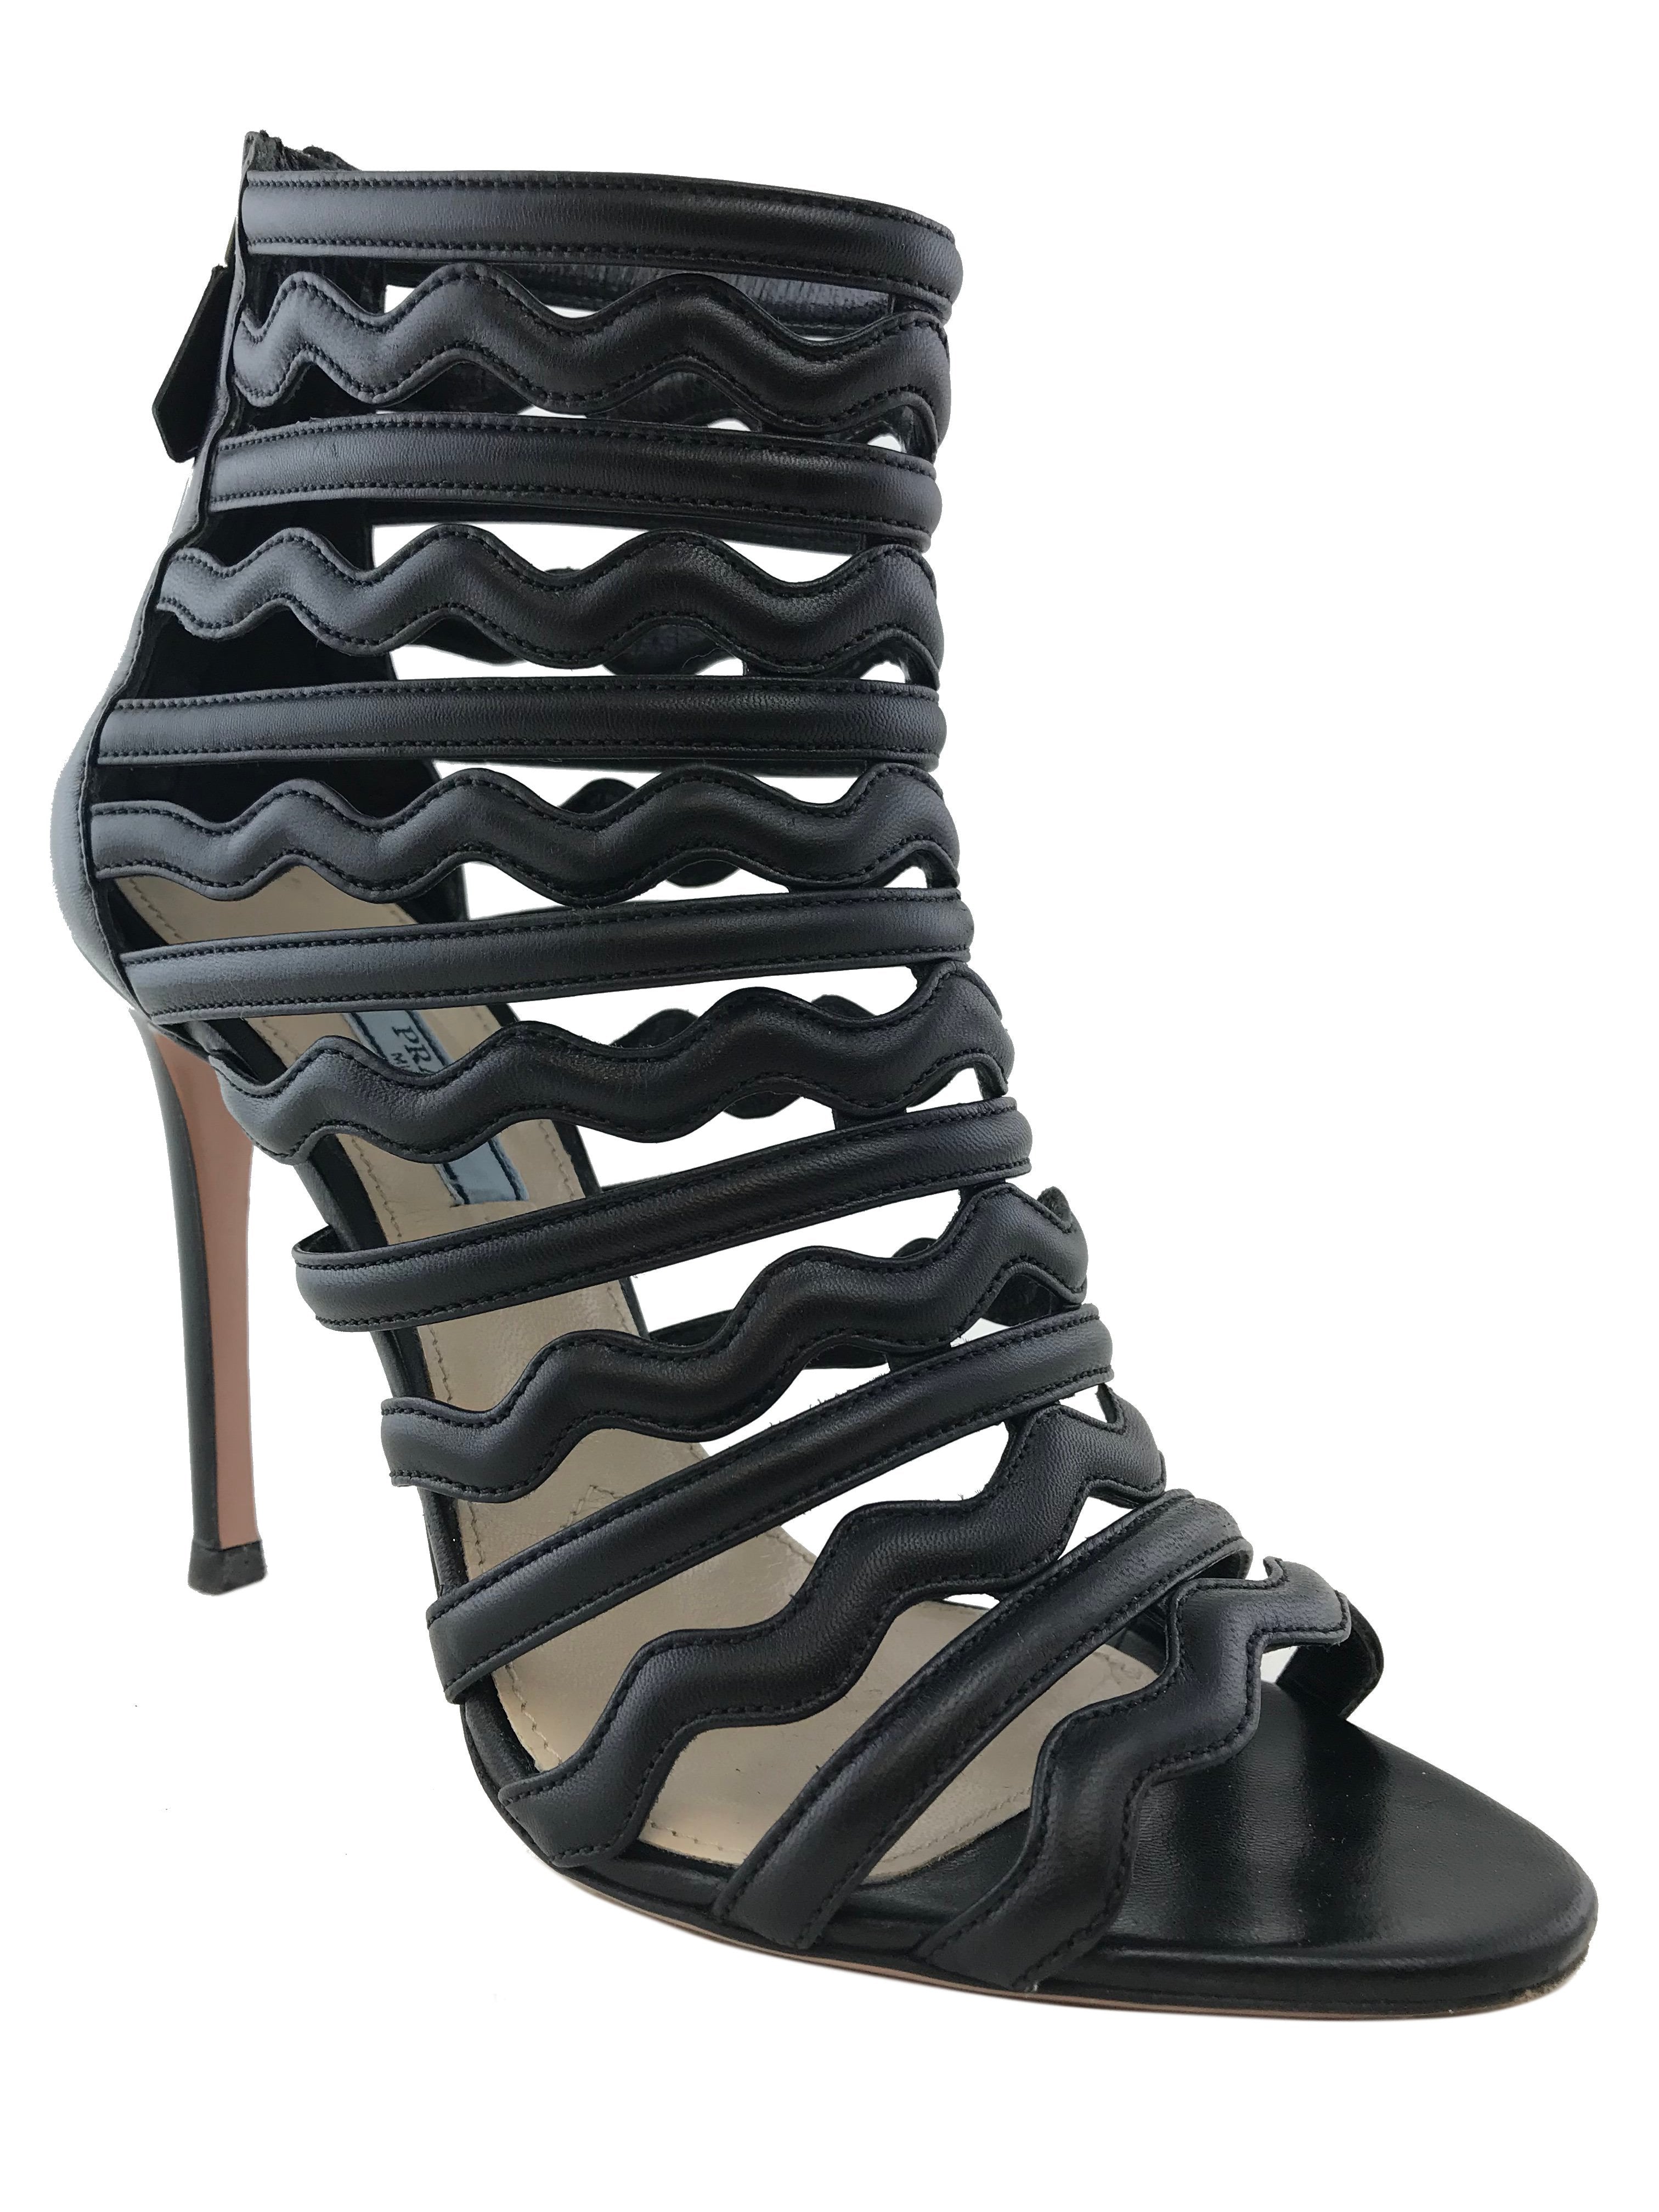 Black Cage Buckle Strap High Heel | Heels, Perfect heels, Everyday heels